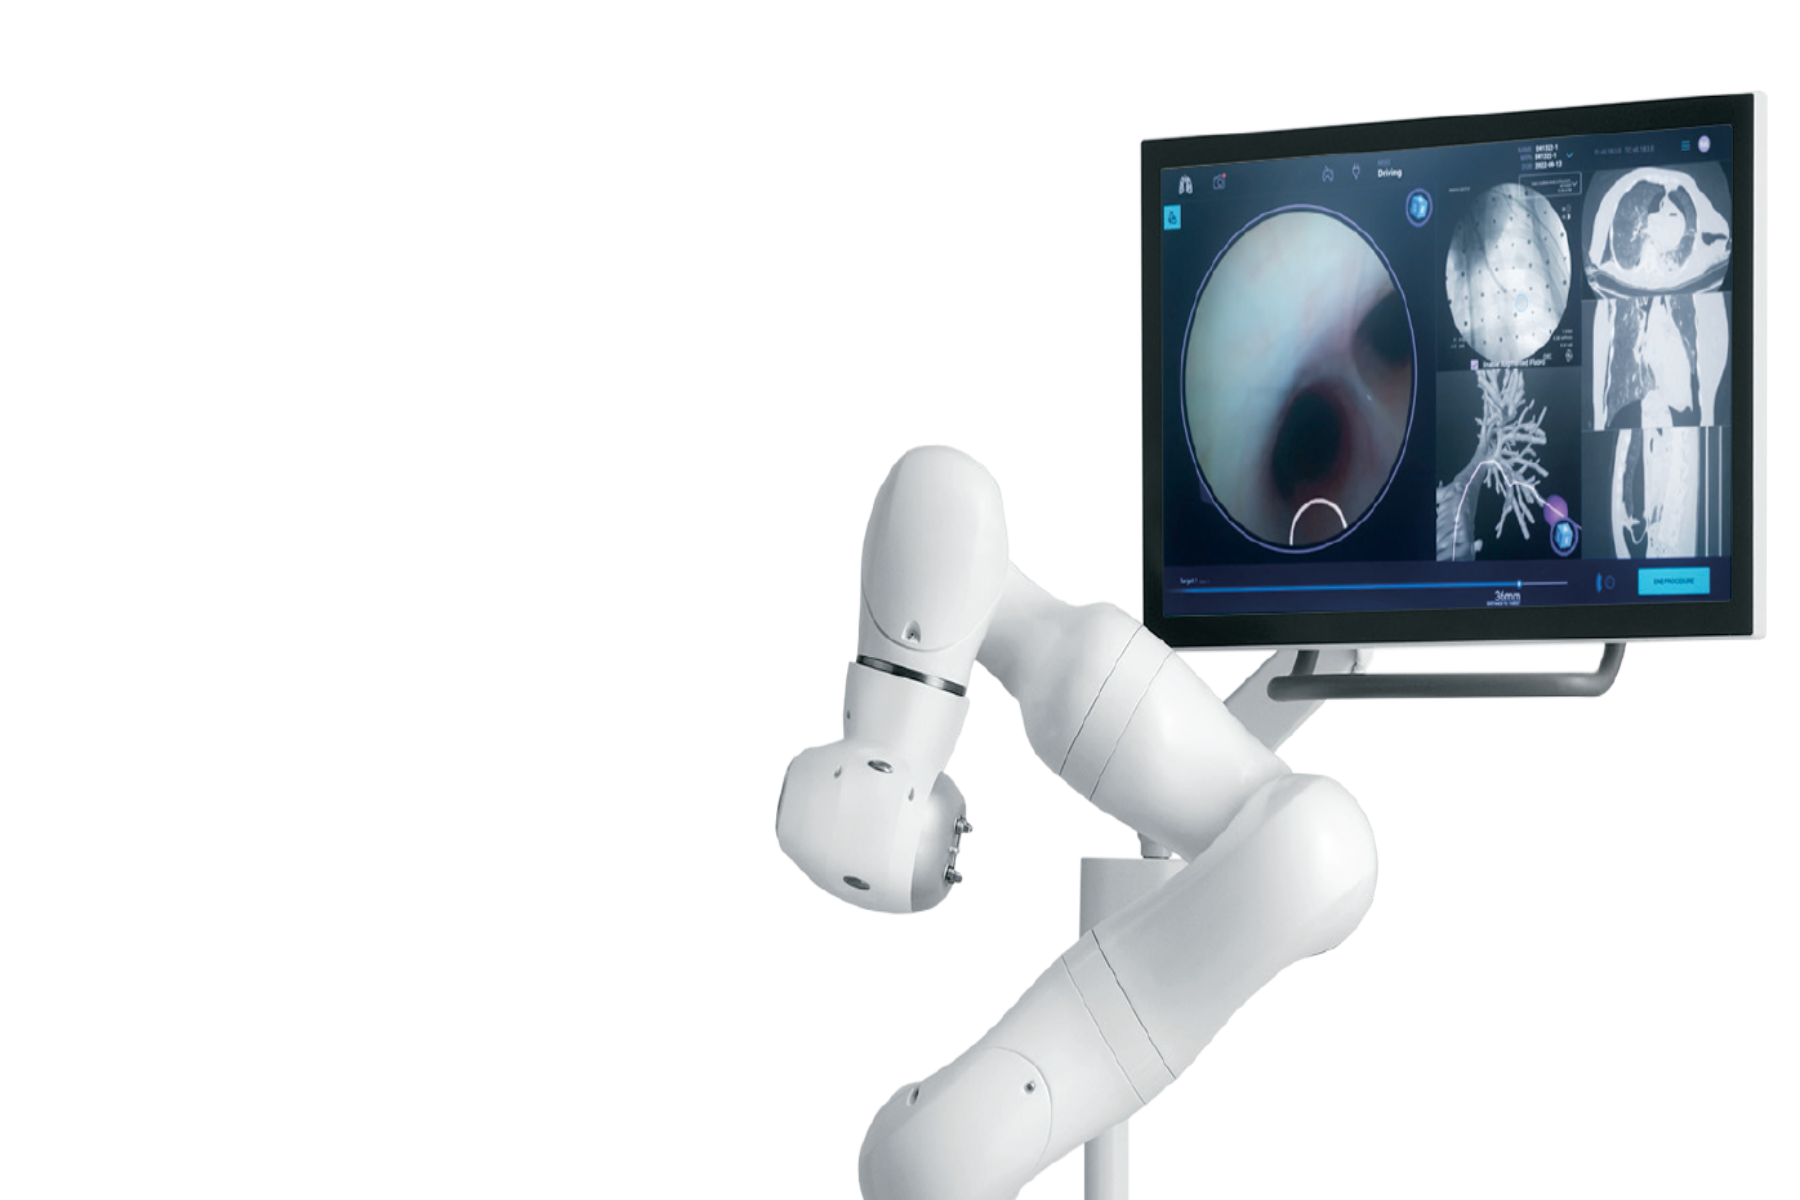 Ρομποτικό σύστημα: Πώς το ρομποτικό σύστημα Galaxy της Noah Medical πηγαίνει βαθιά στους πνεύμονες;